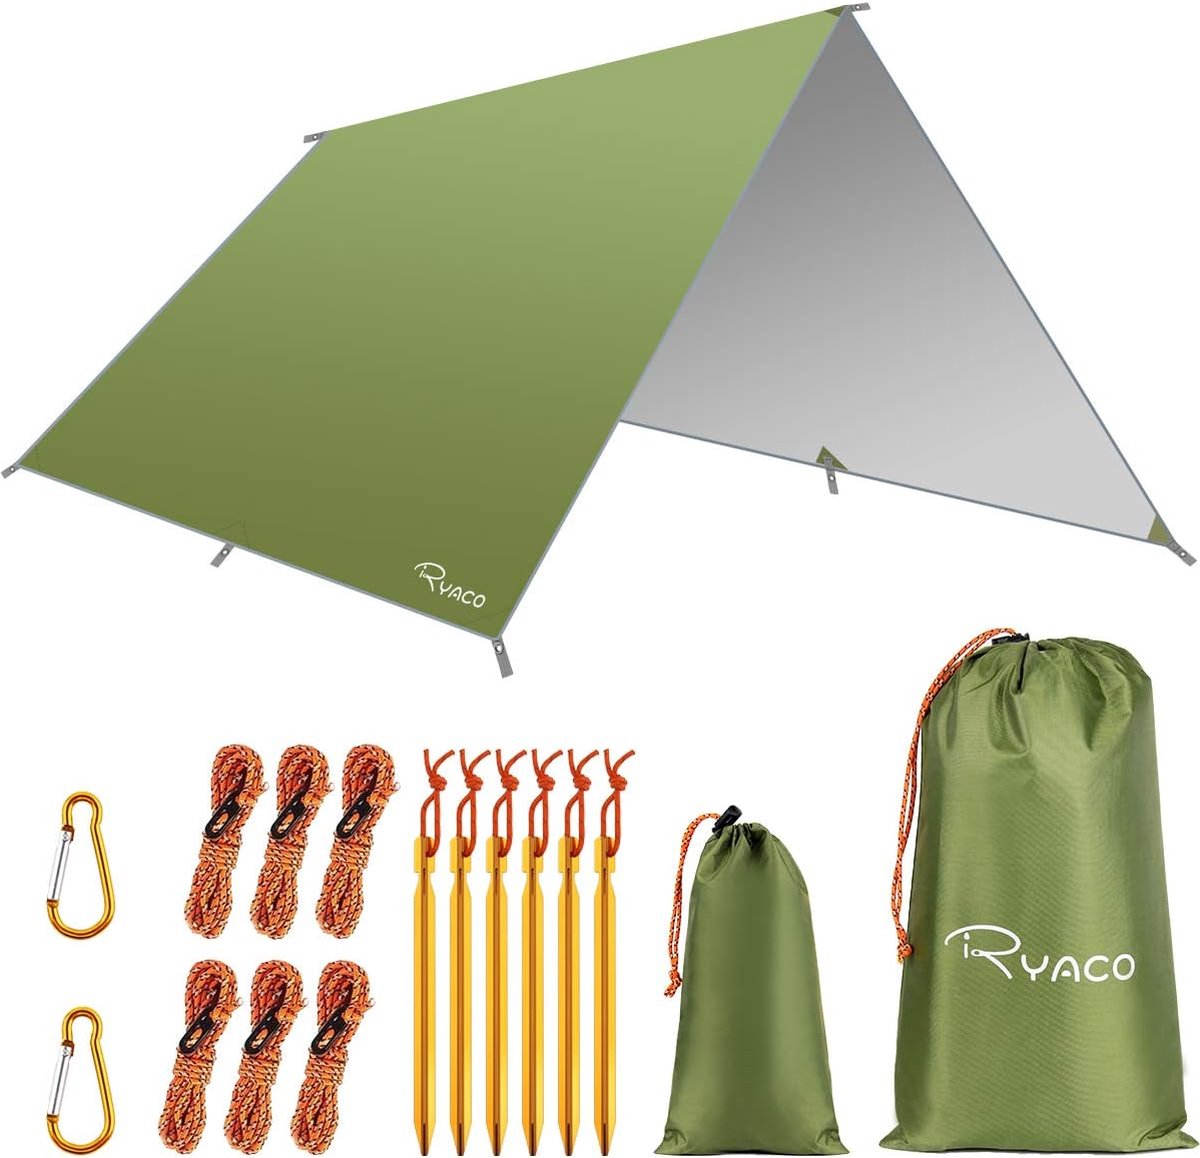 Camping tentzeil, 3 m x 3 m, waterdicht, voor hangmat, met 6 haringen en 6 touwen, anti-uv-regen, zonbescherming, licht, compact grondzeil, picknickdeken, hammock, voor buiten, camping, herbruikbaar